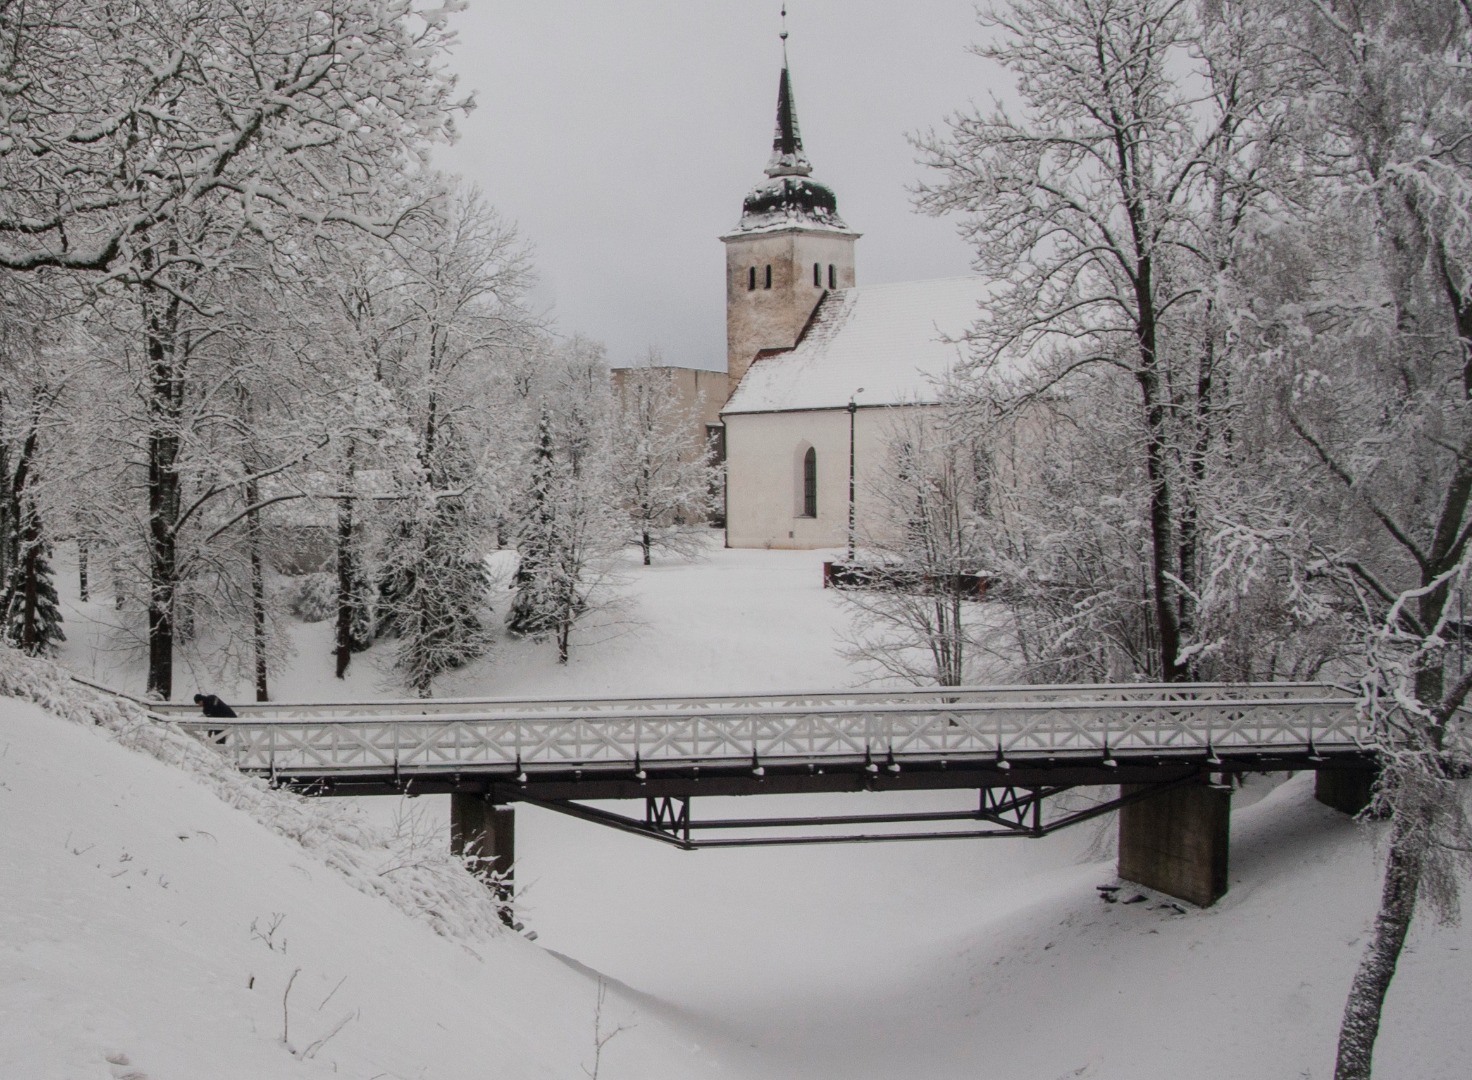 foto Viljandi, vaade lossimägedest Varesesild, vallikraav 1930 talv foto J.Riet rephoto